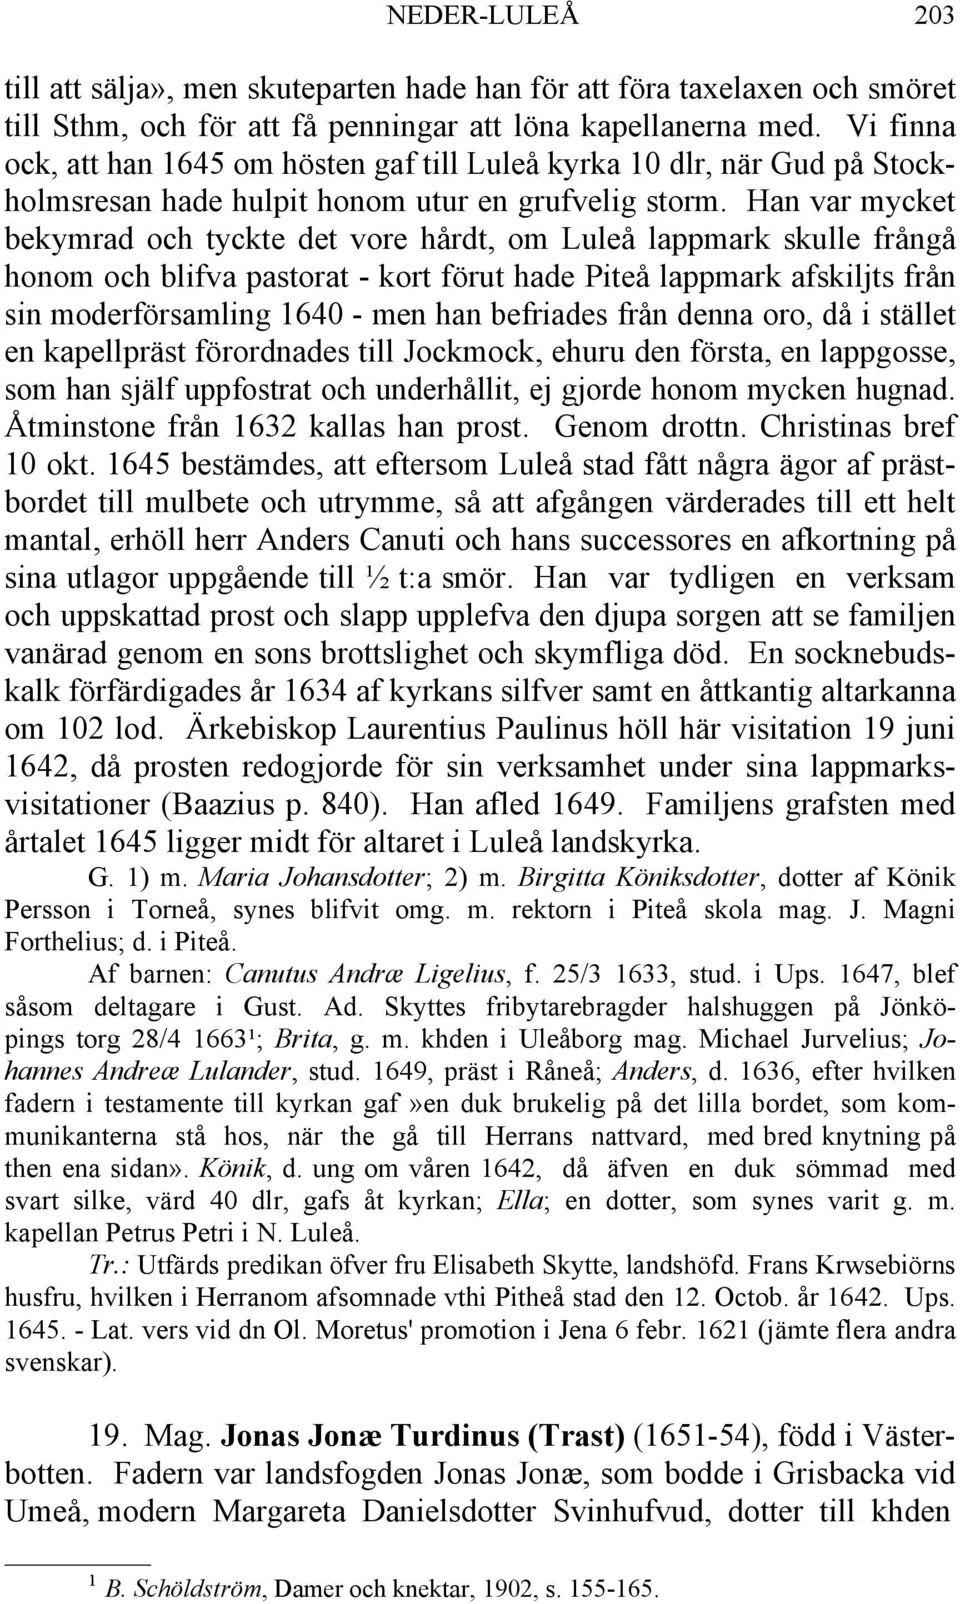 Han var mycket bekymrad och tyckte det vore hårdt, om Luleå lappmark skulle frångå honom och blifva pastorat - kort förut hade Piteå lappmark afskiljts från sin moderförsamling 1640 - men han